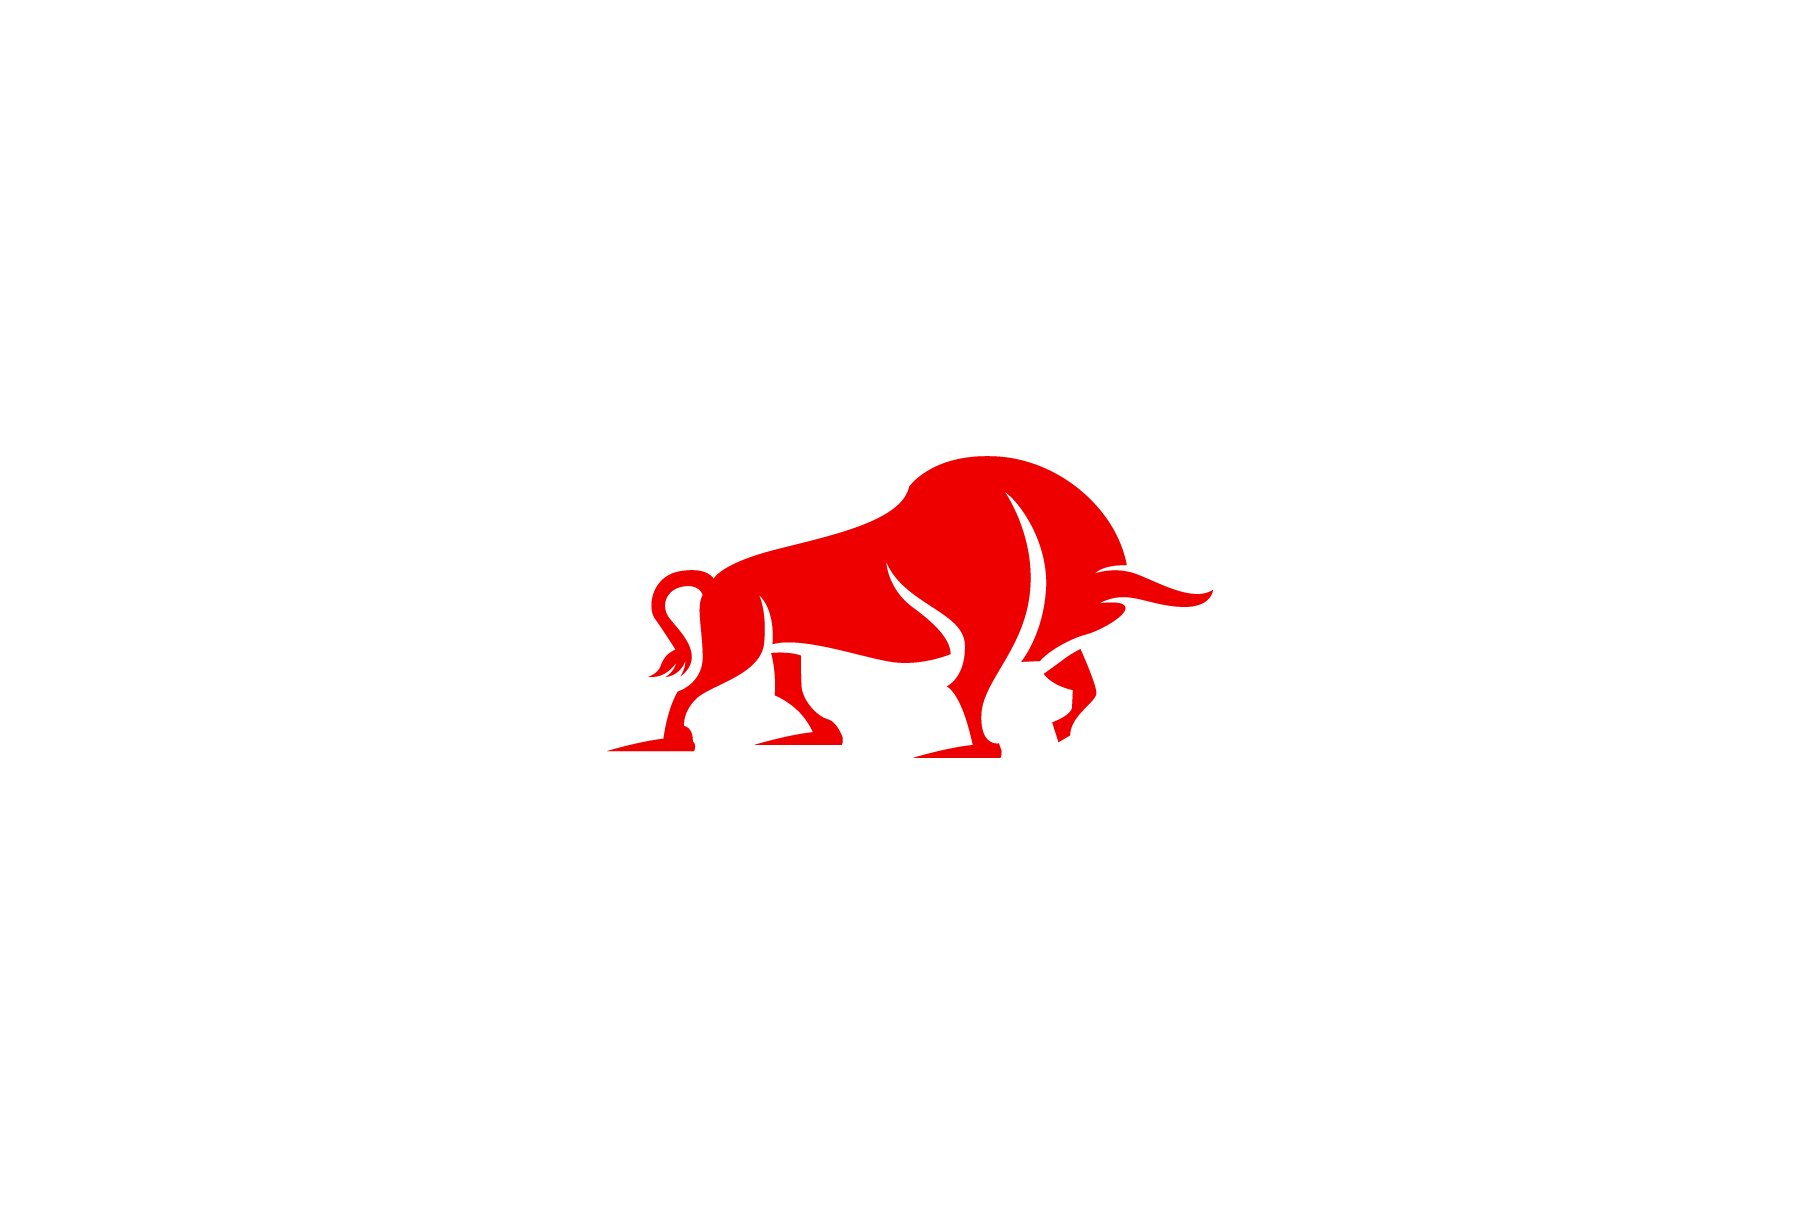 Bull Logo cover image.